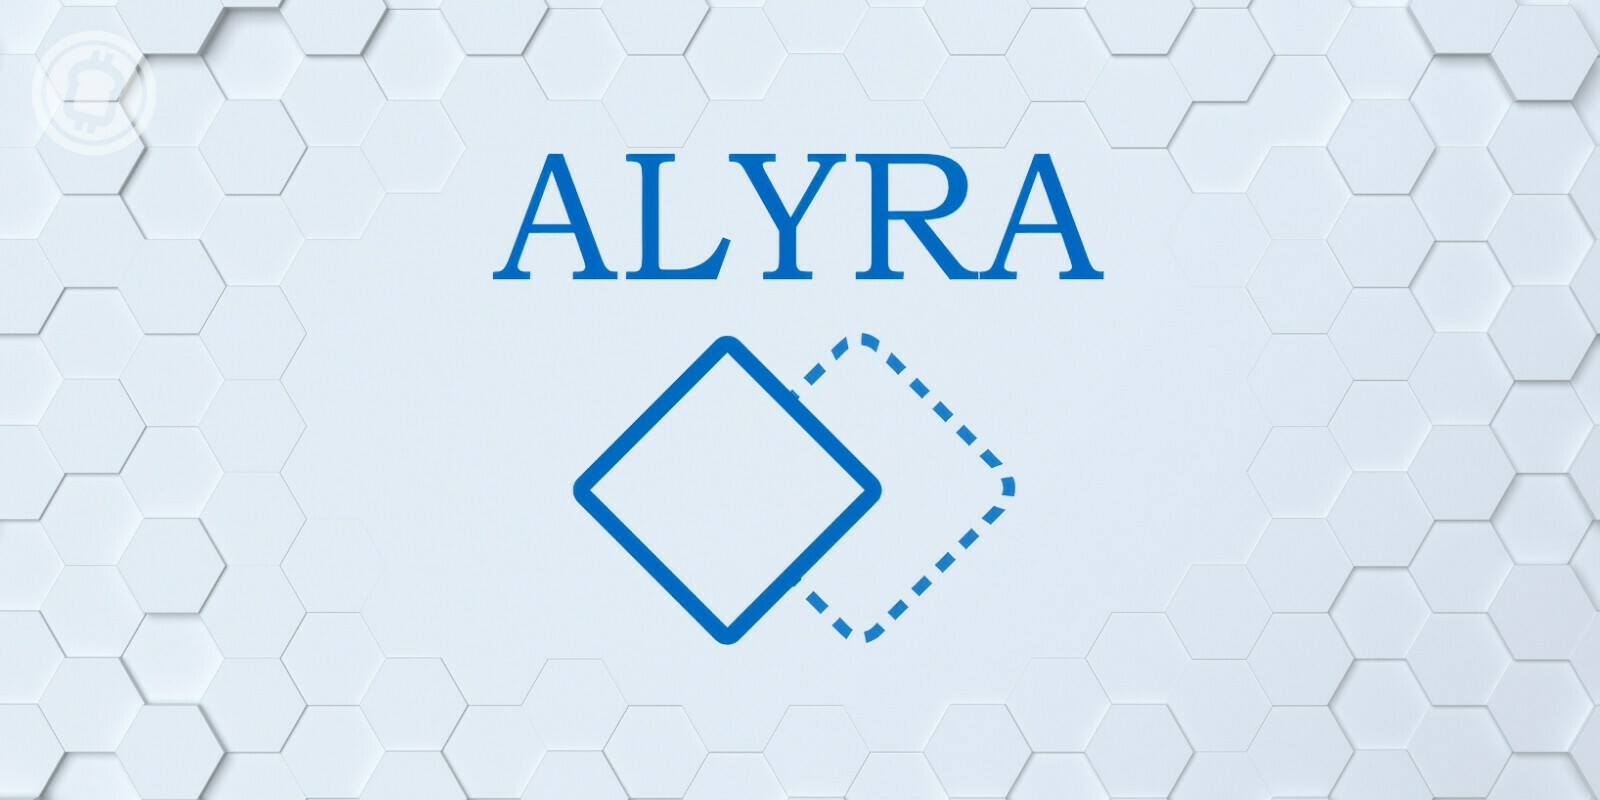 L'école Alyra : votre formation au cœur même de la blockchain